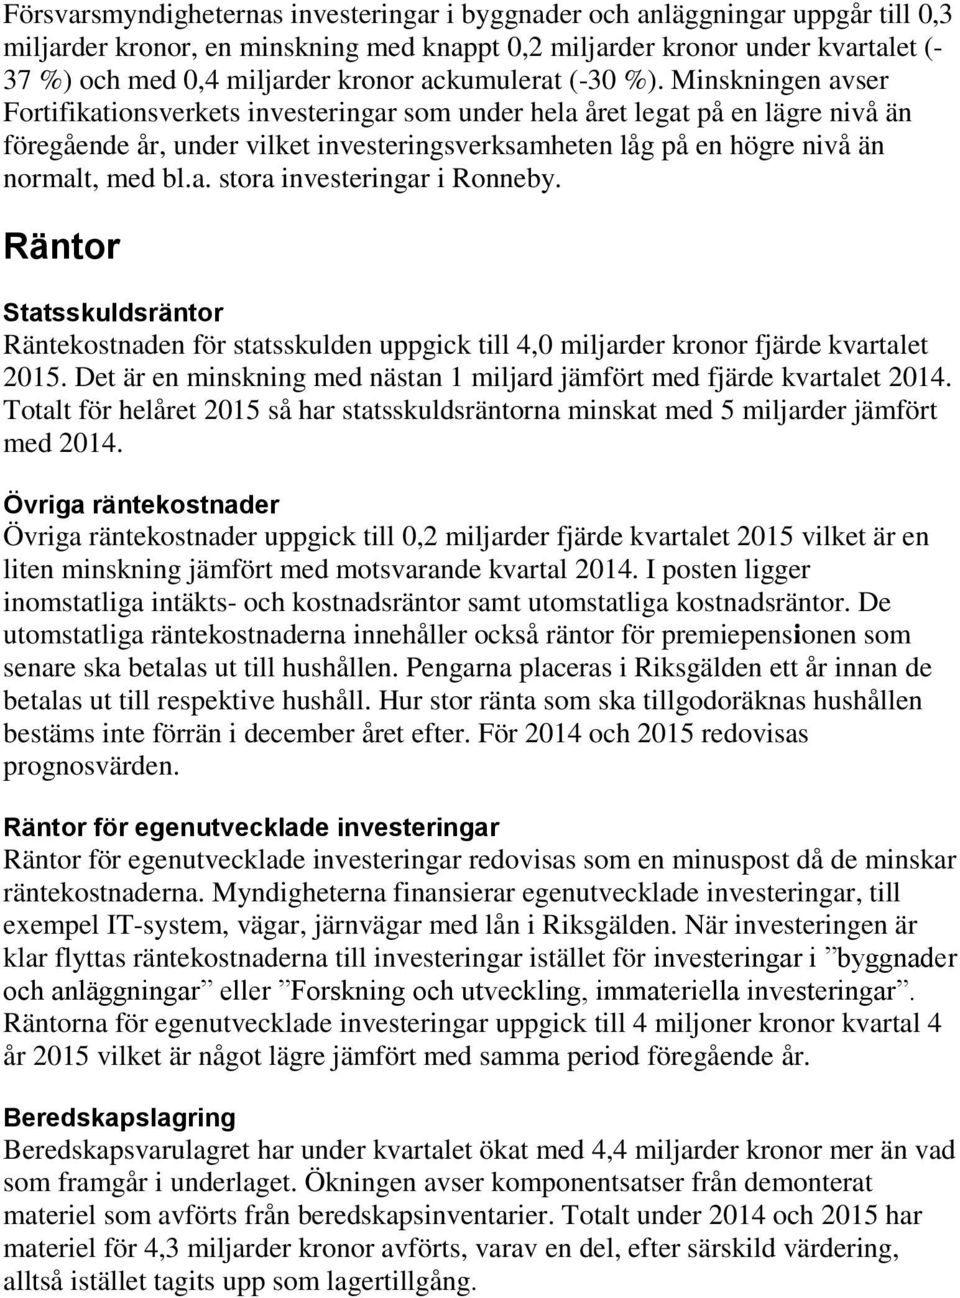 Minskningen avser Fortifikationsverkets investeringar som under hela året legat på en lägre nivå än föregående år, under vilket investeringsverksamheten låg på en högre nivå än normalt, med bl.a. stora investeringar i Ronneby.